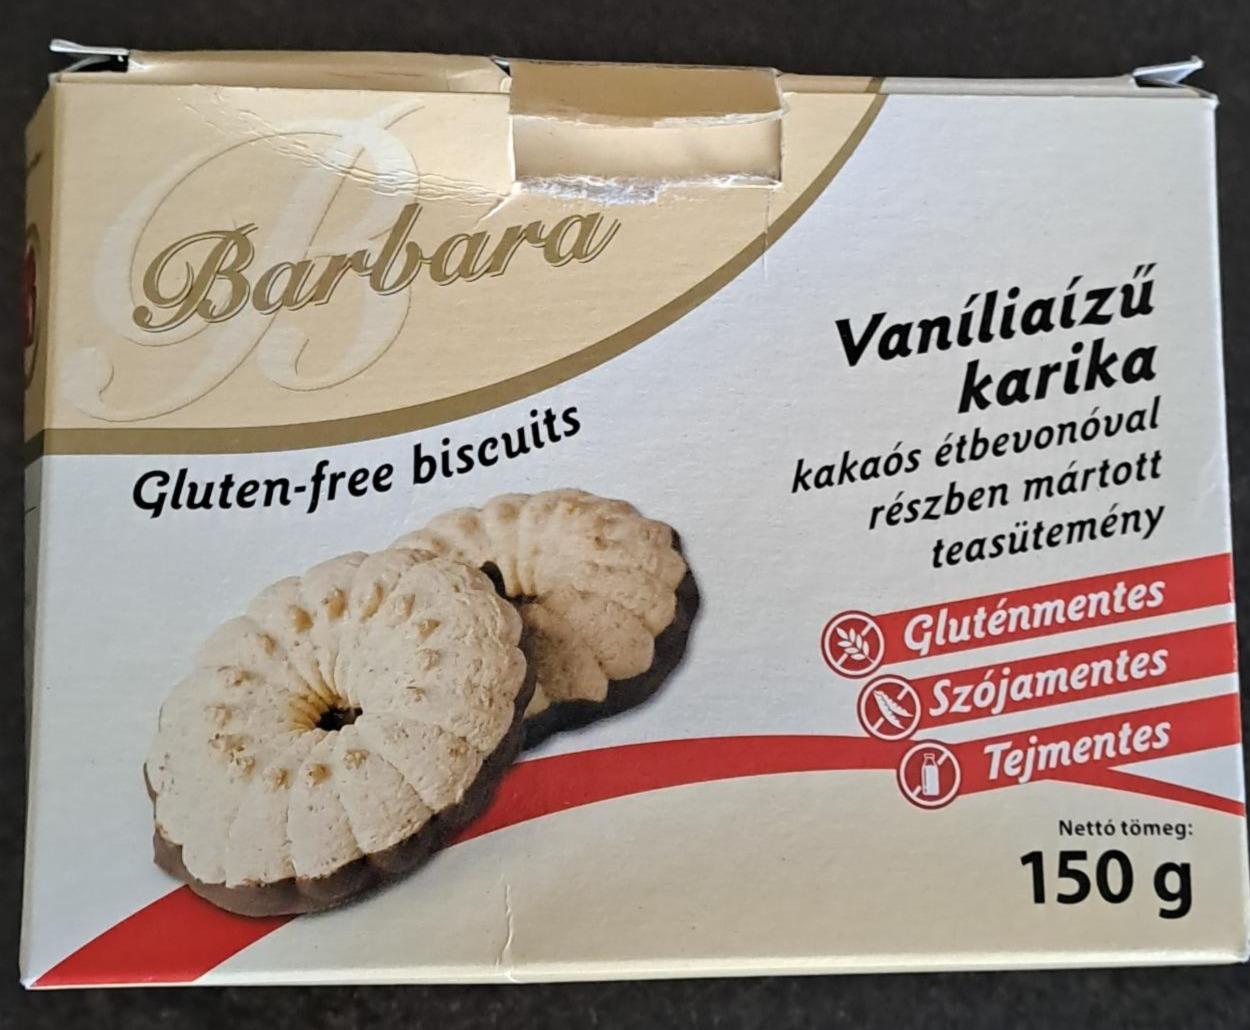 Képek - Vaníliaízű karika gluténmentes Barbara